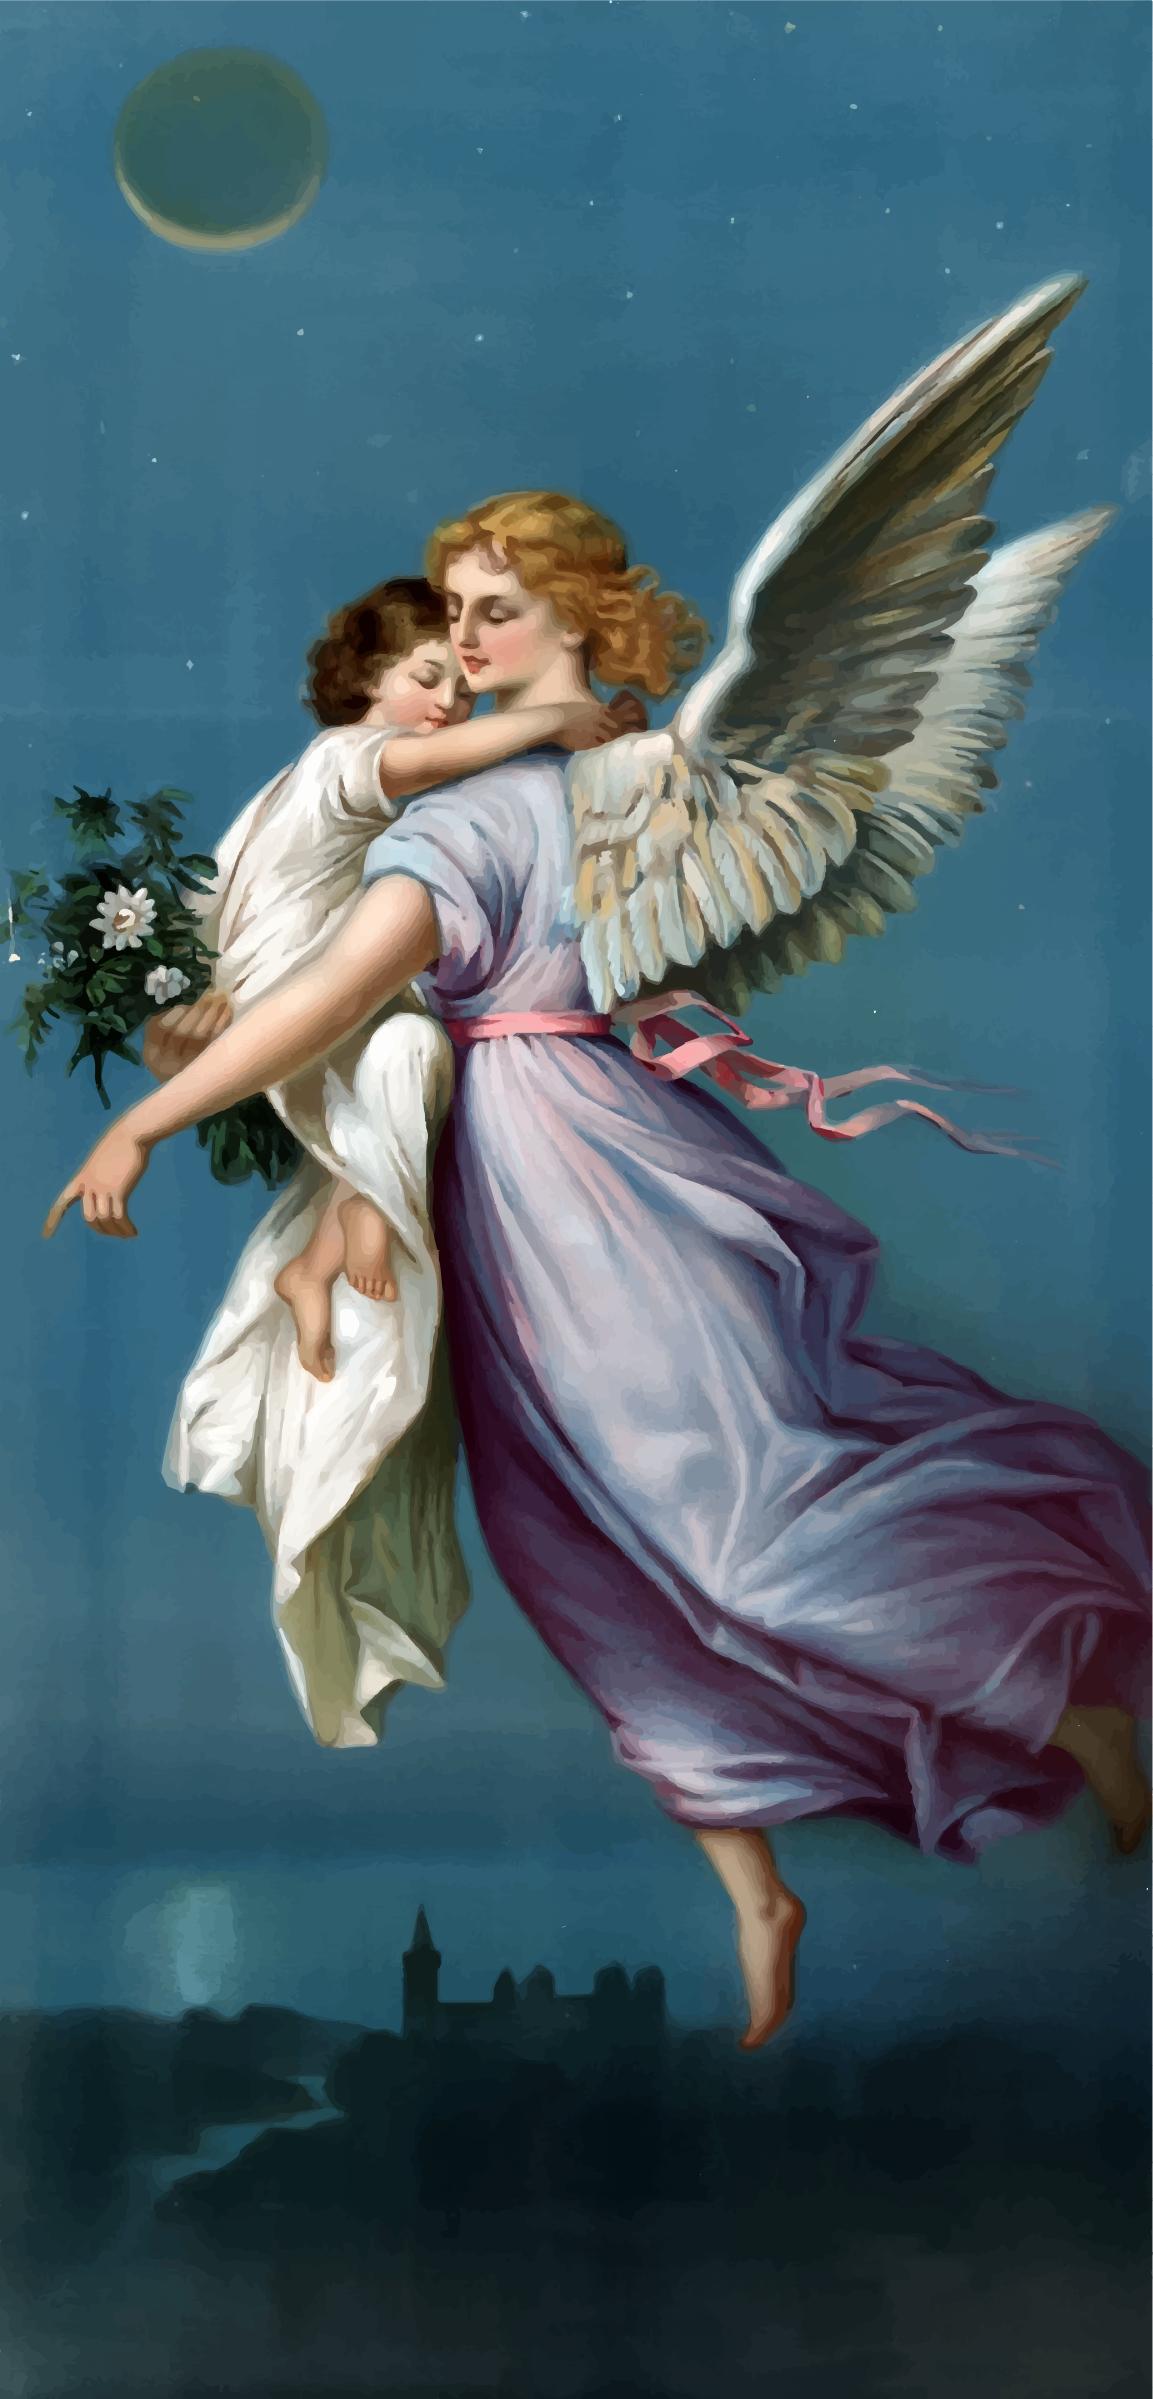 Vintage Angel And Child Illustration png